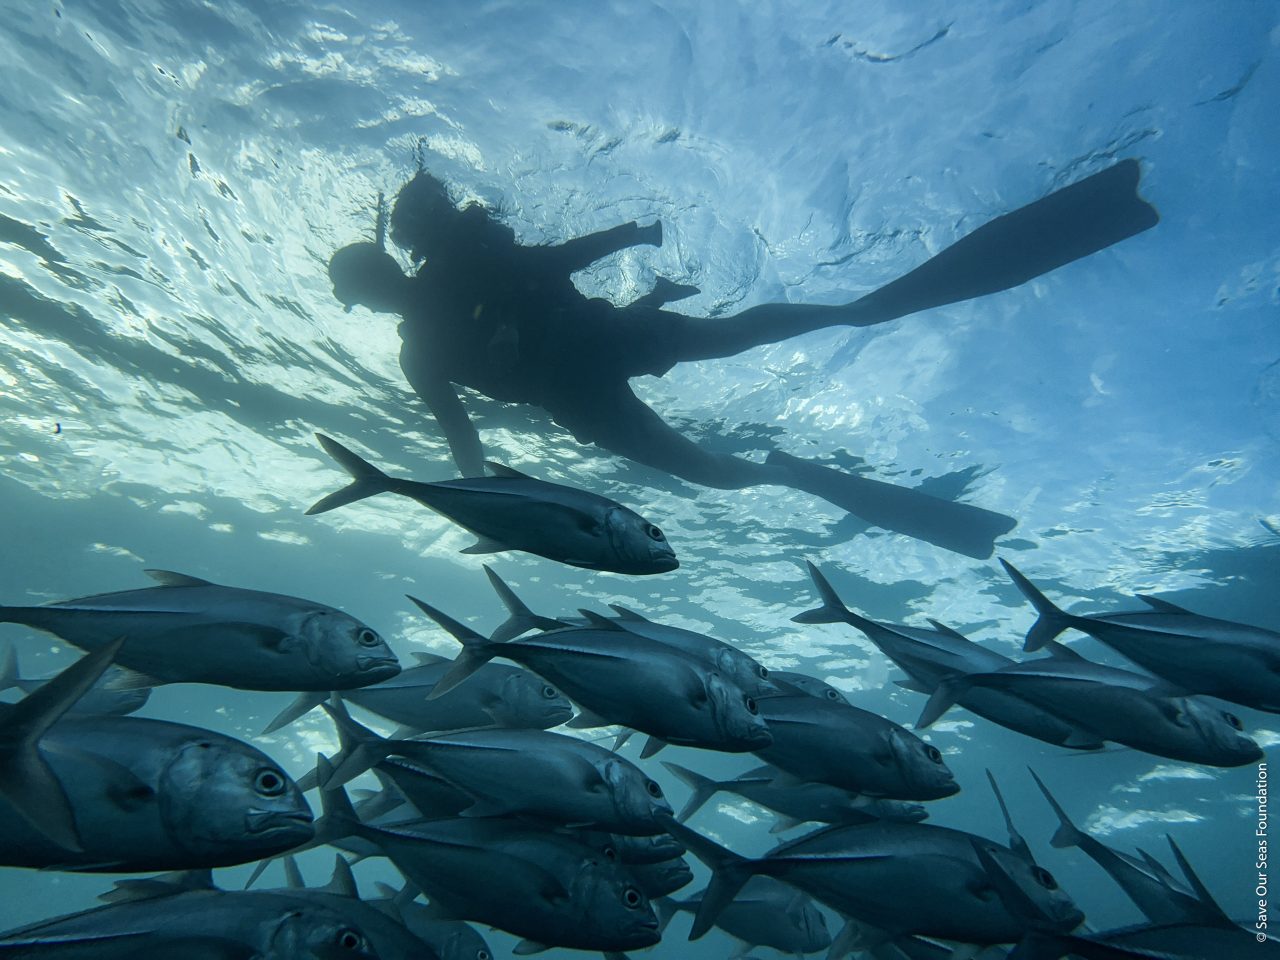 Tauche ein in die Welt der Ozeane: Die International Ocean Film Tour ist zurück!